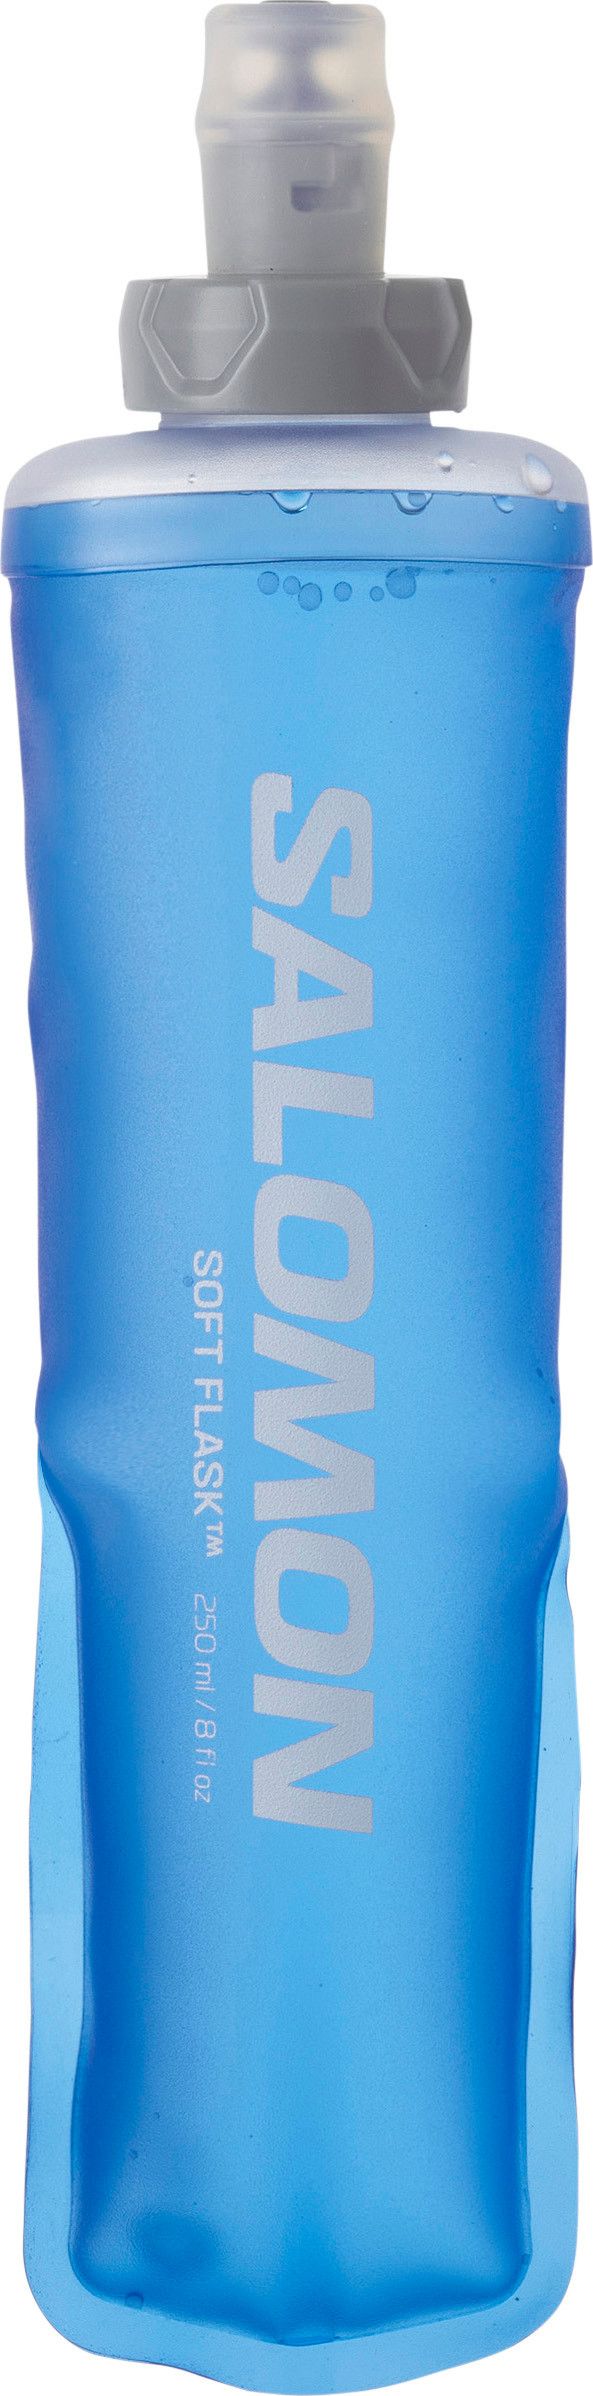 Soft Flask 250ml/8oz 28 Clear Blue Salomon